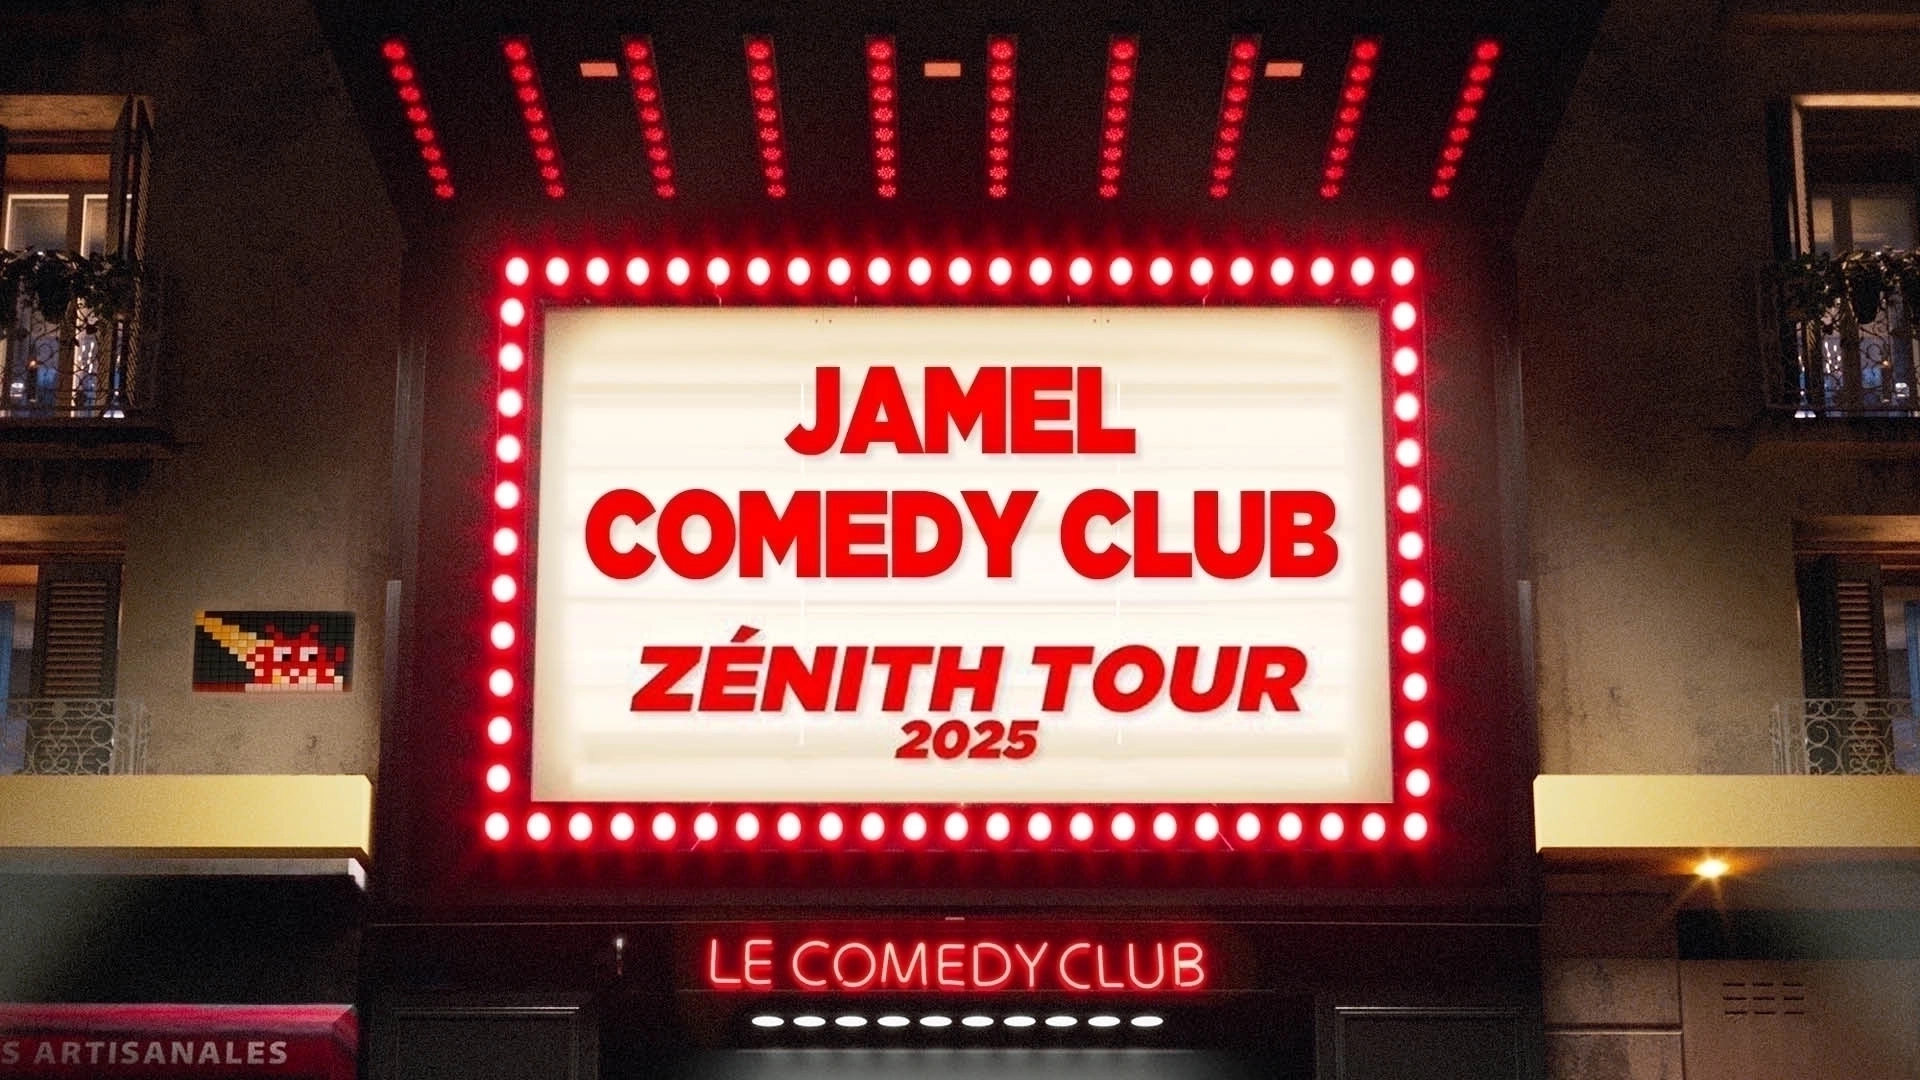 Tournée des Zeniths pour le Jamel Comedy Club en 2025